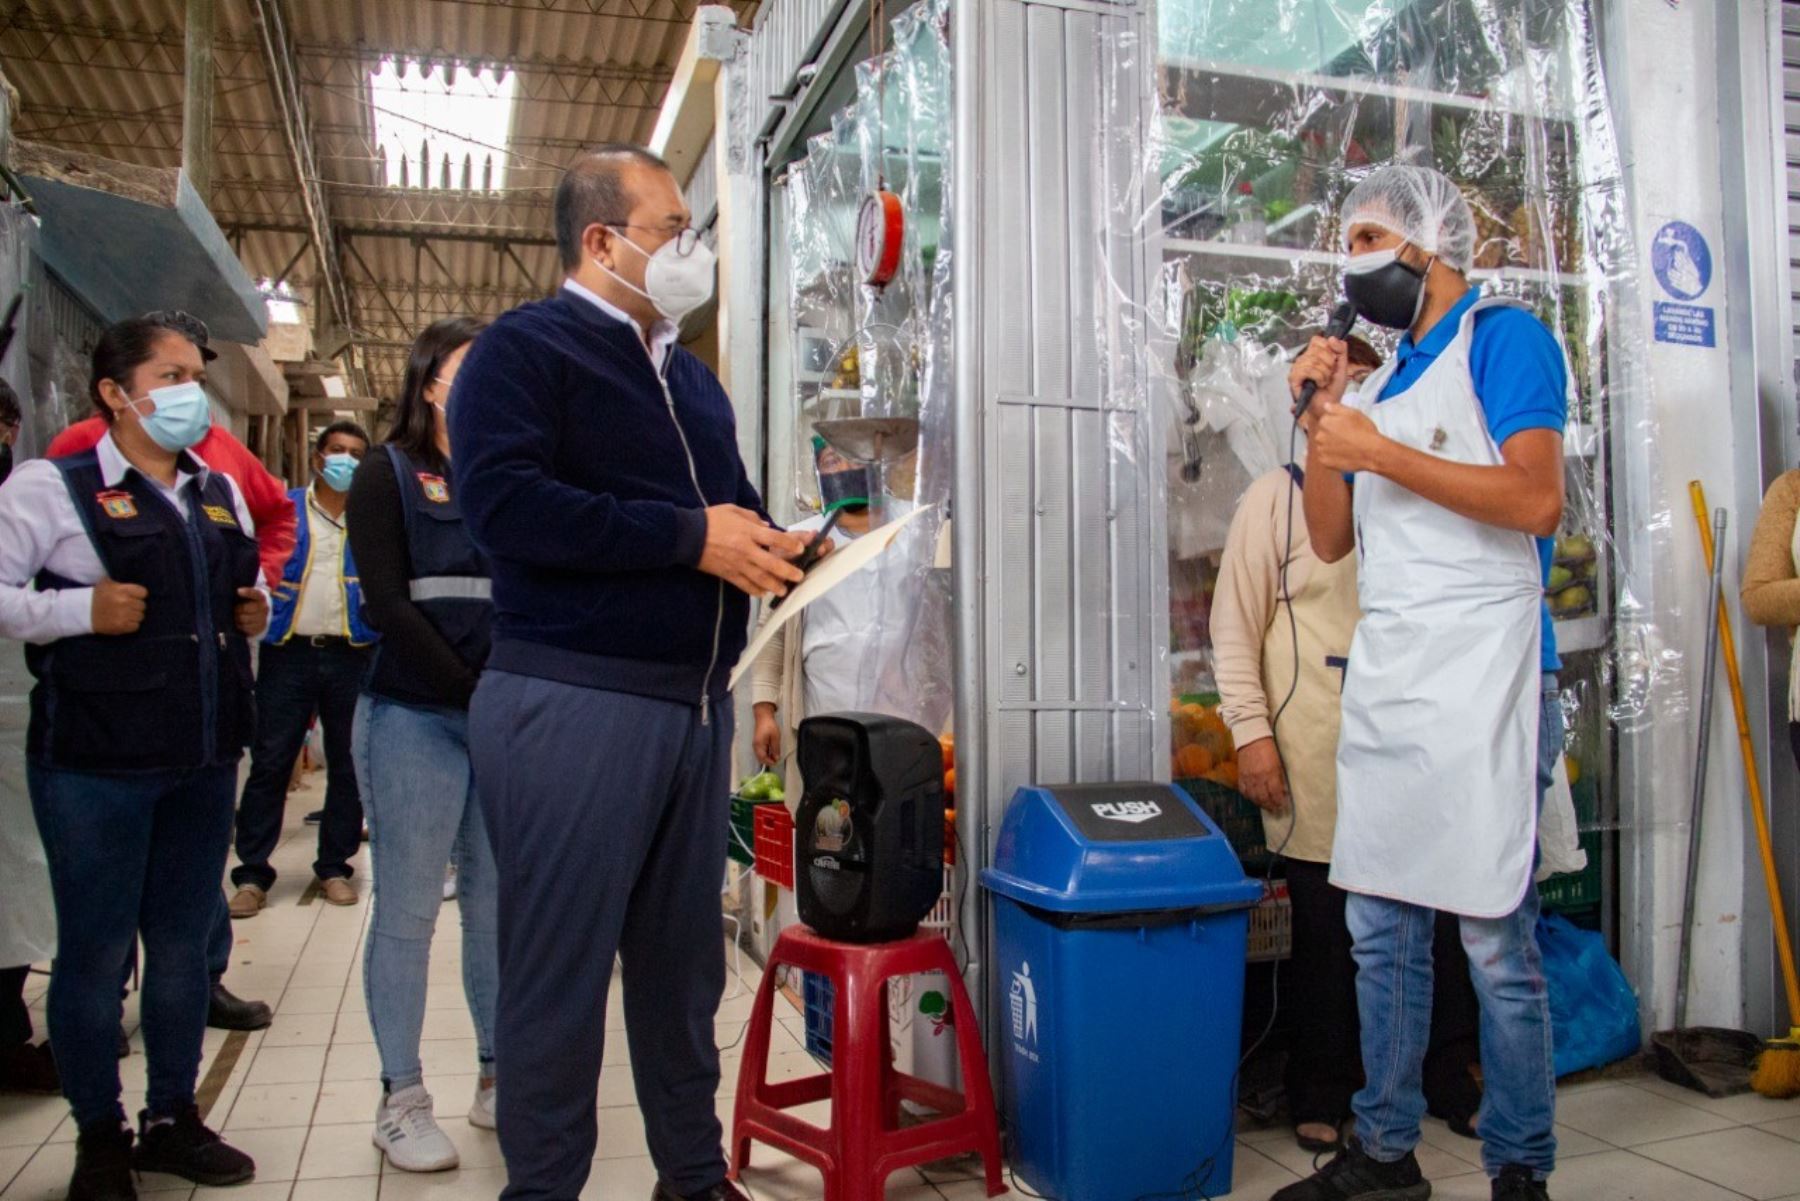 Municipalidad de Chiclayo promueve mercados saludables para prevenir contagios de covid-19 entre comerciantes y compradores. ANDINA/Difusión